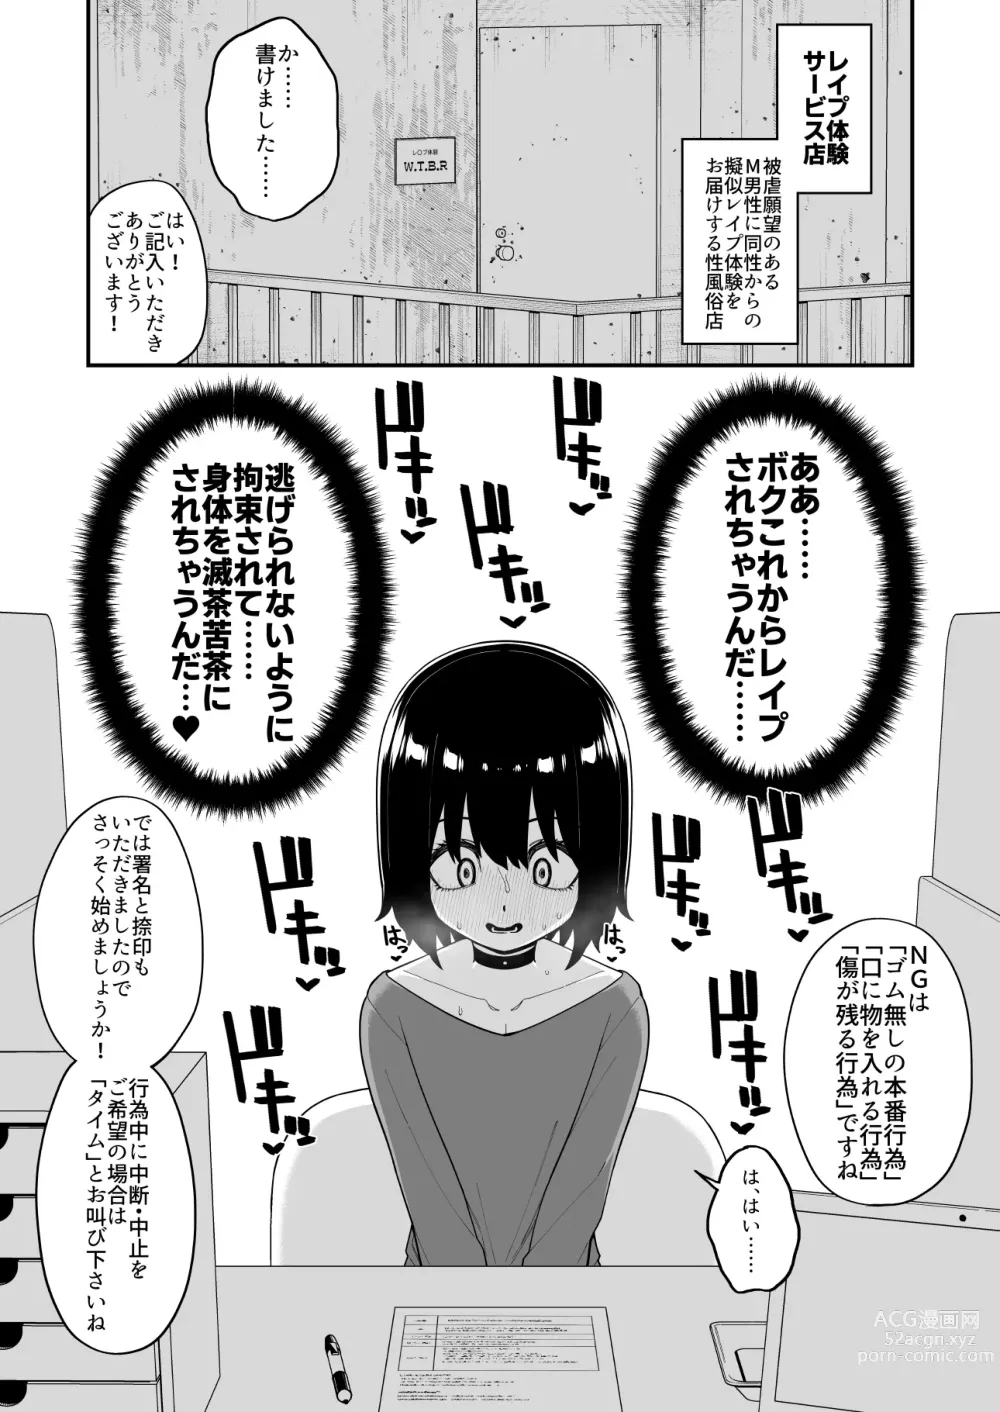 Page 118 of doujinshi 品川ミクズ＠女装パンデミック